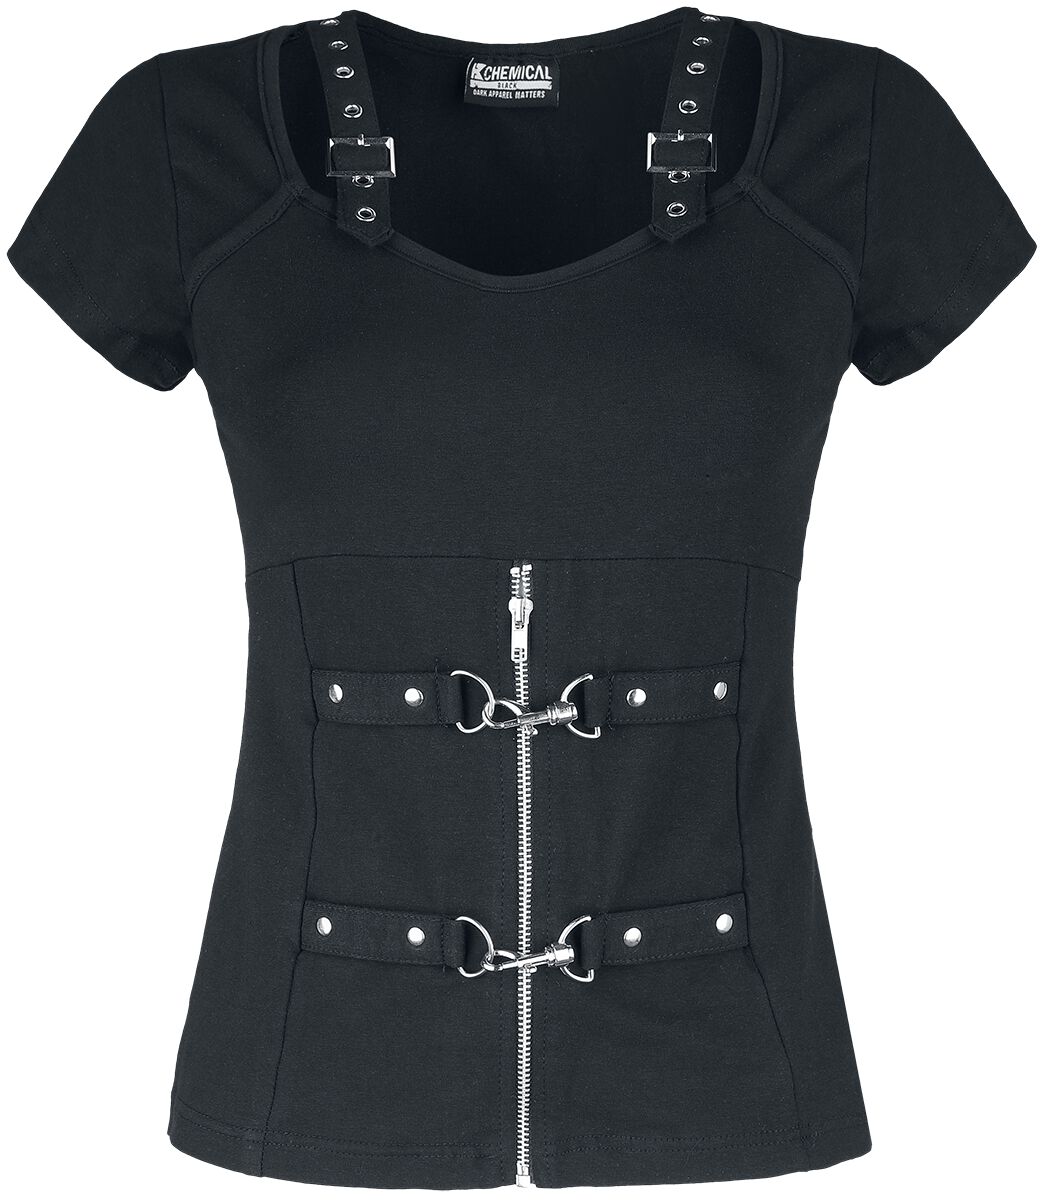 Chemical Black - Gothic T-Shirt - Maniacal Top - XS bis XXL - für Damen - Größe XS - schwarz